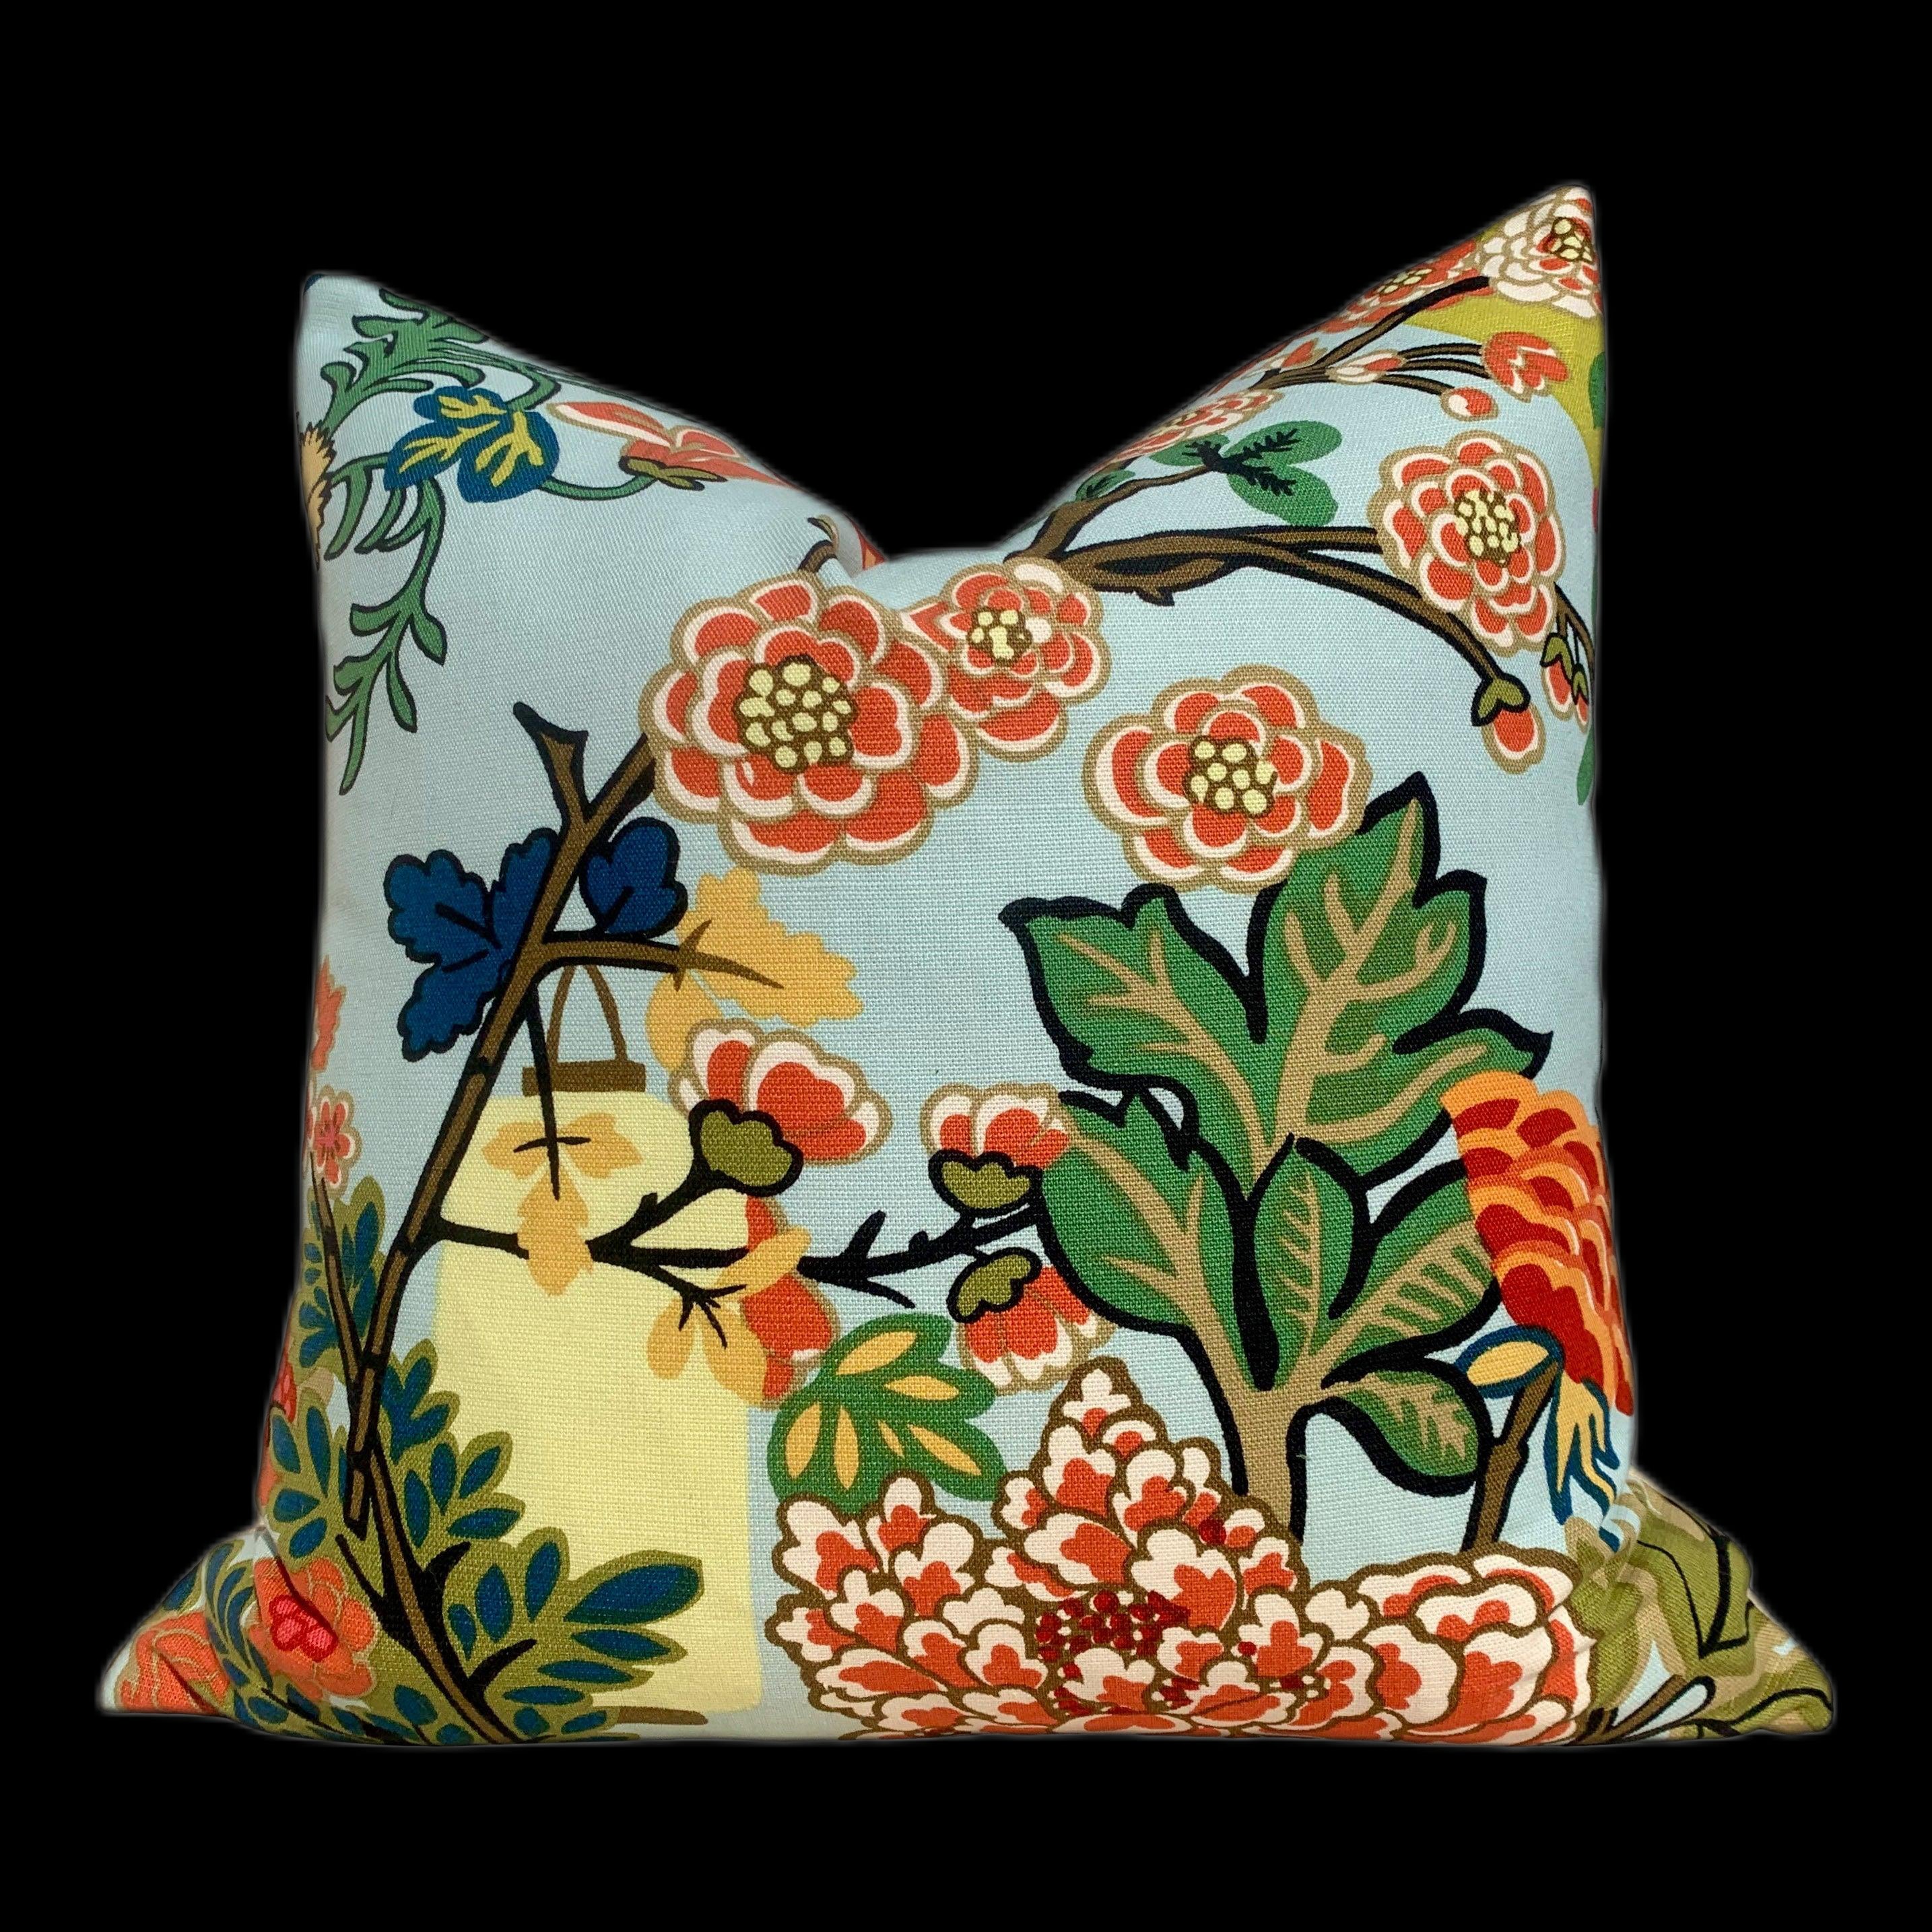 Chang Mai Dragon Pillow in Aqua. Decorative Floral Asian Lumbar Linen Pillow in Spa Chinoiserie Pillow Euro Sham Pillow, Schumacher pillow